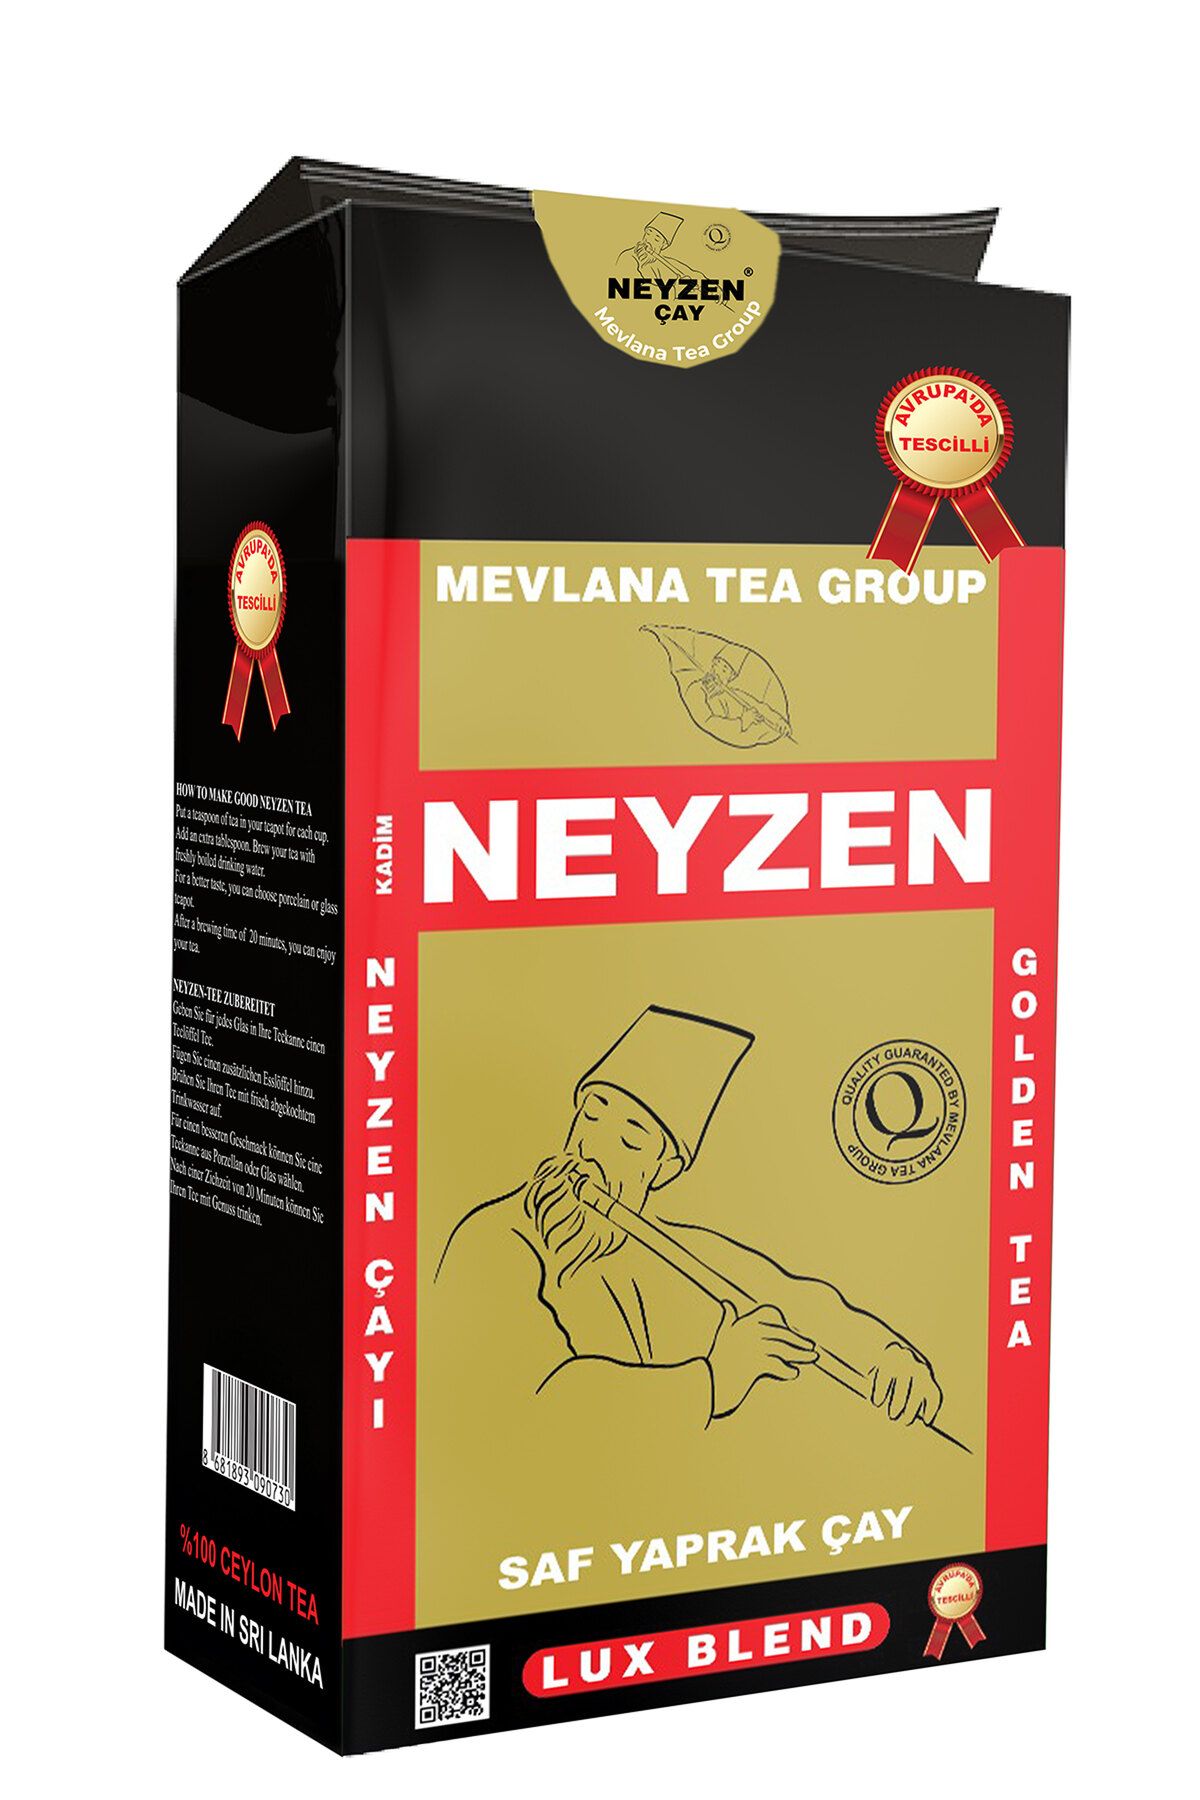 Mevlana Çay Mevlana Tea Group Golden Tea Siyah Dökme Çay 800 gr - (ORJİNAL) Sri Lanka'nın Efsane Incisi